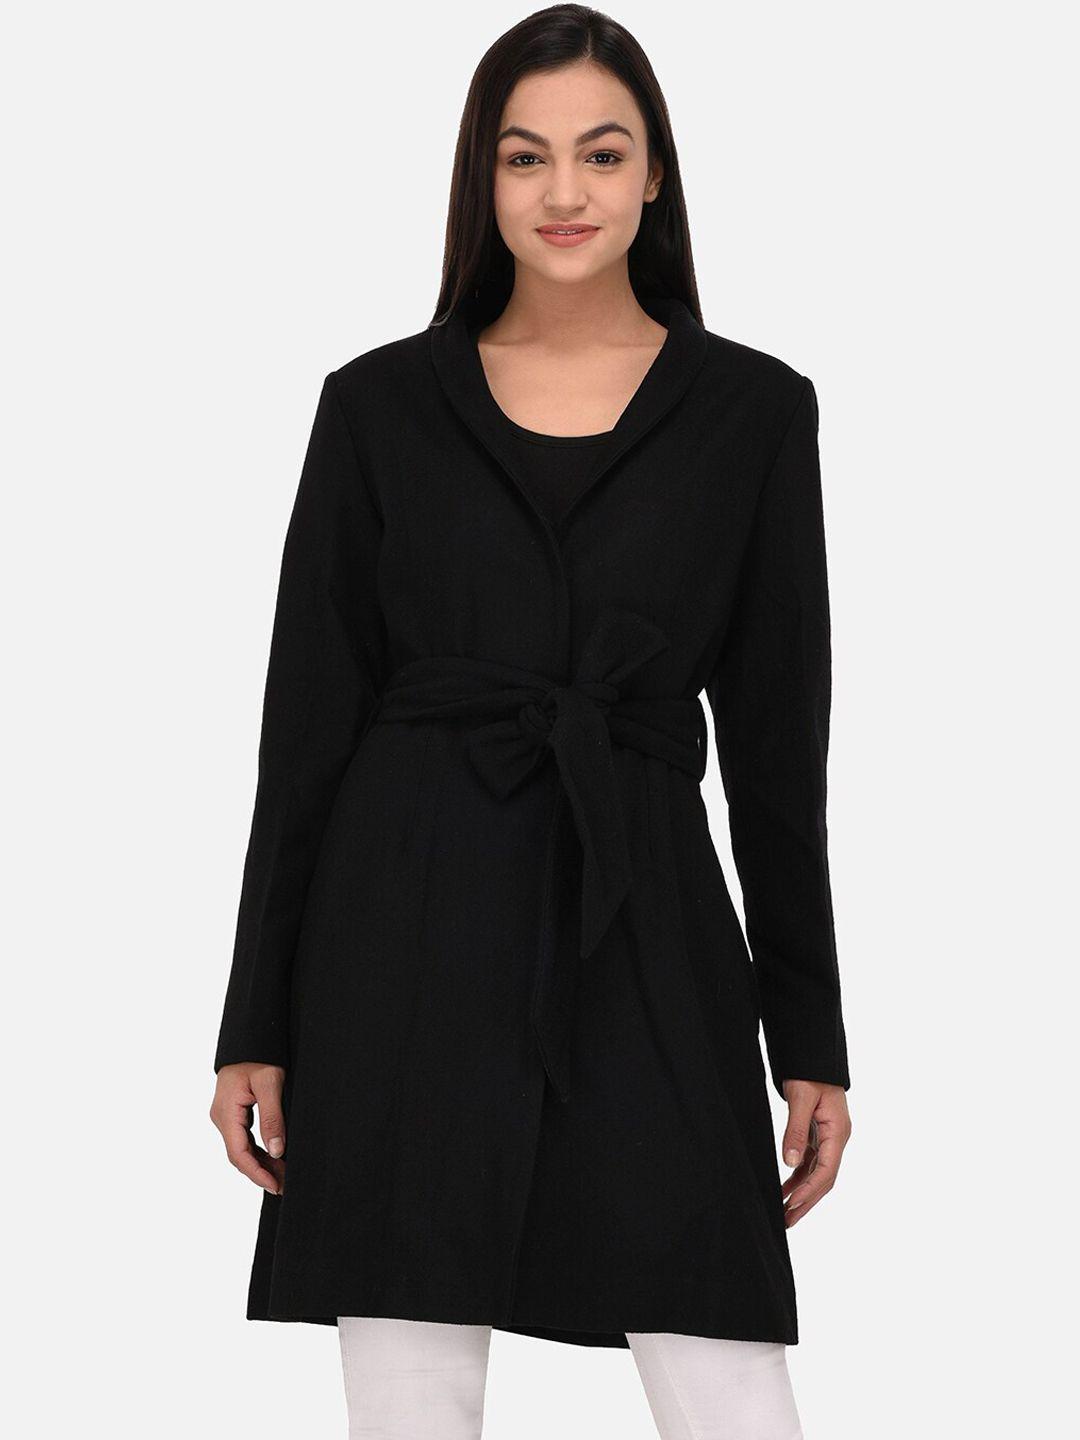 owncraft women black solid woollen overcoat with belt